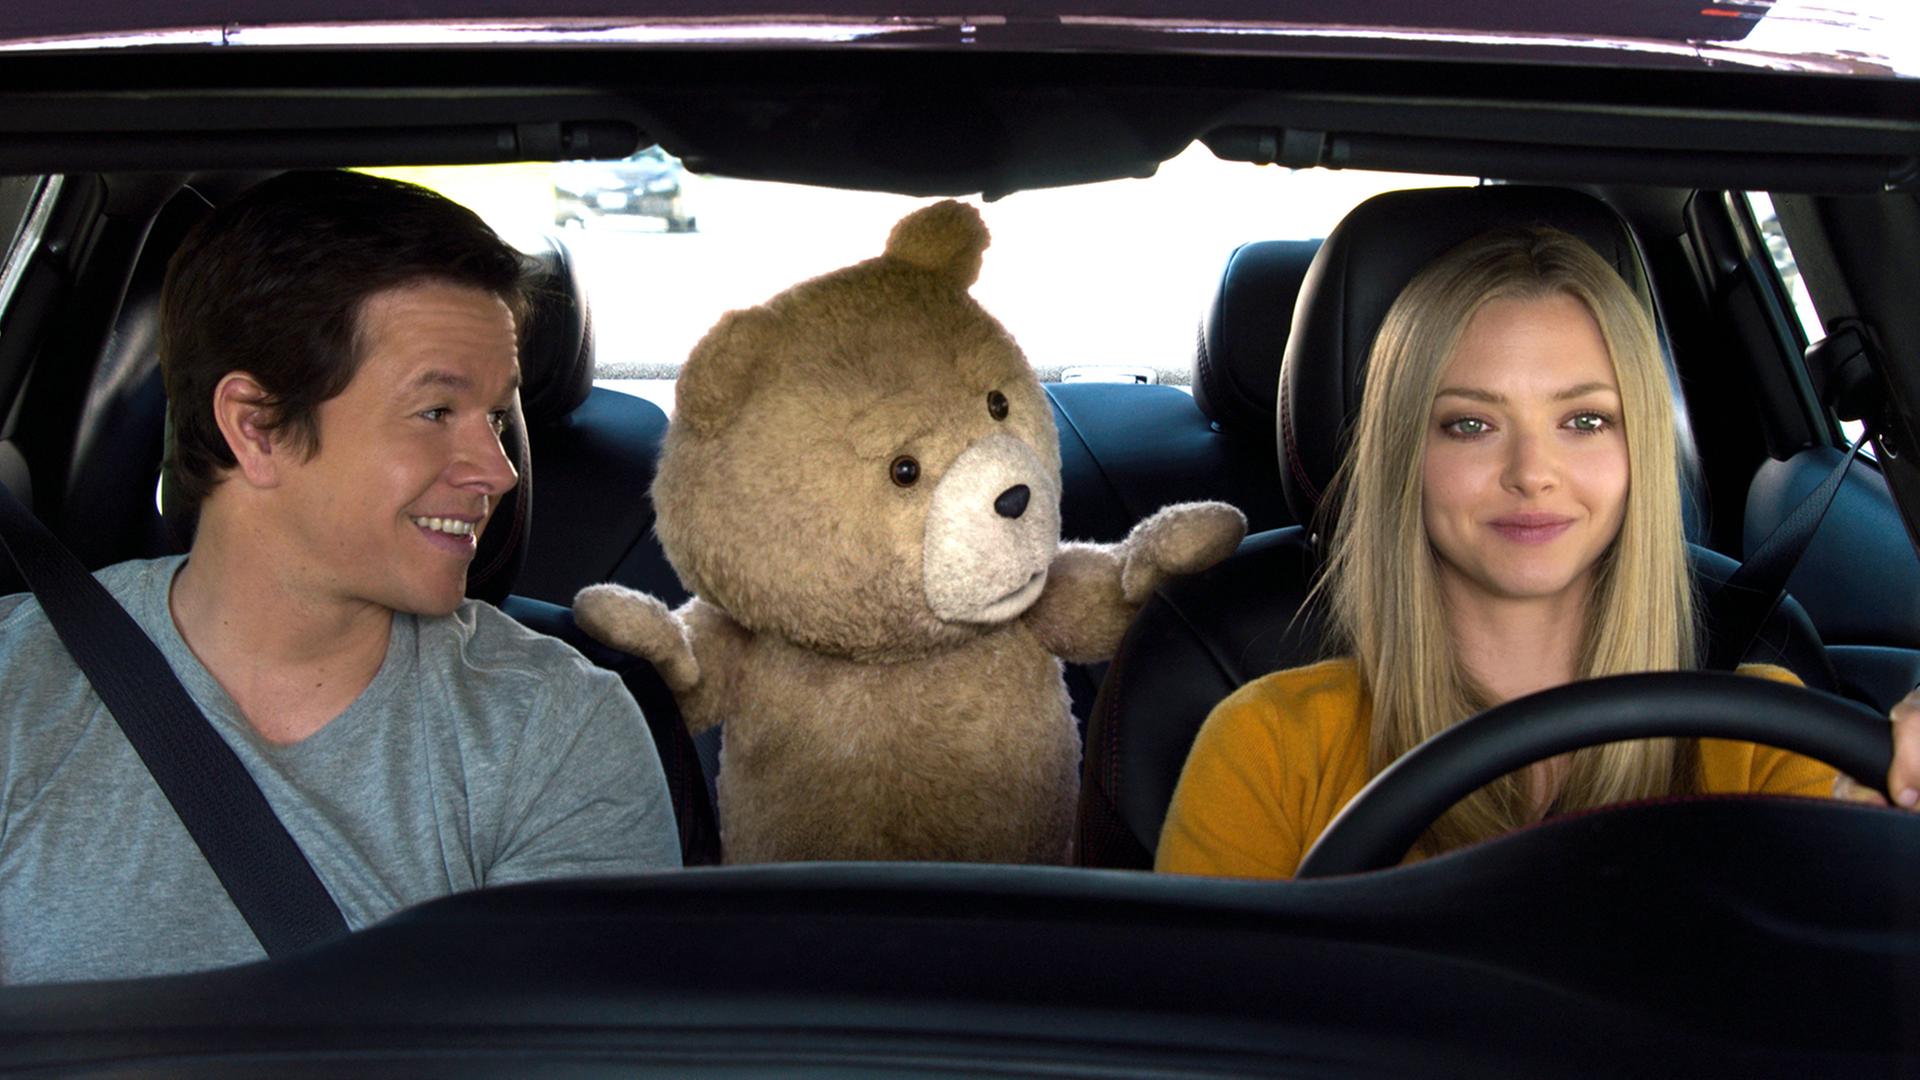 Mark Wahlberg als John und Amanda Seyfried als Samantha Jackson in einer Szene der Kino-Komödie "Ted 2" (undatierte Aufnahme).